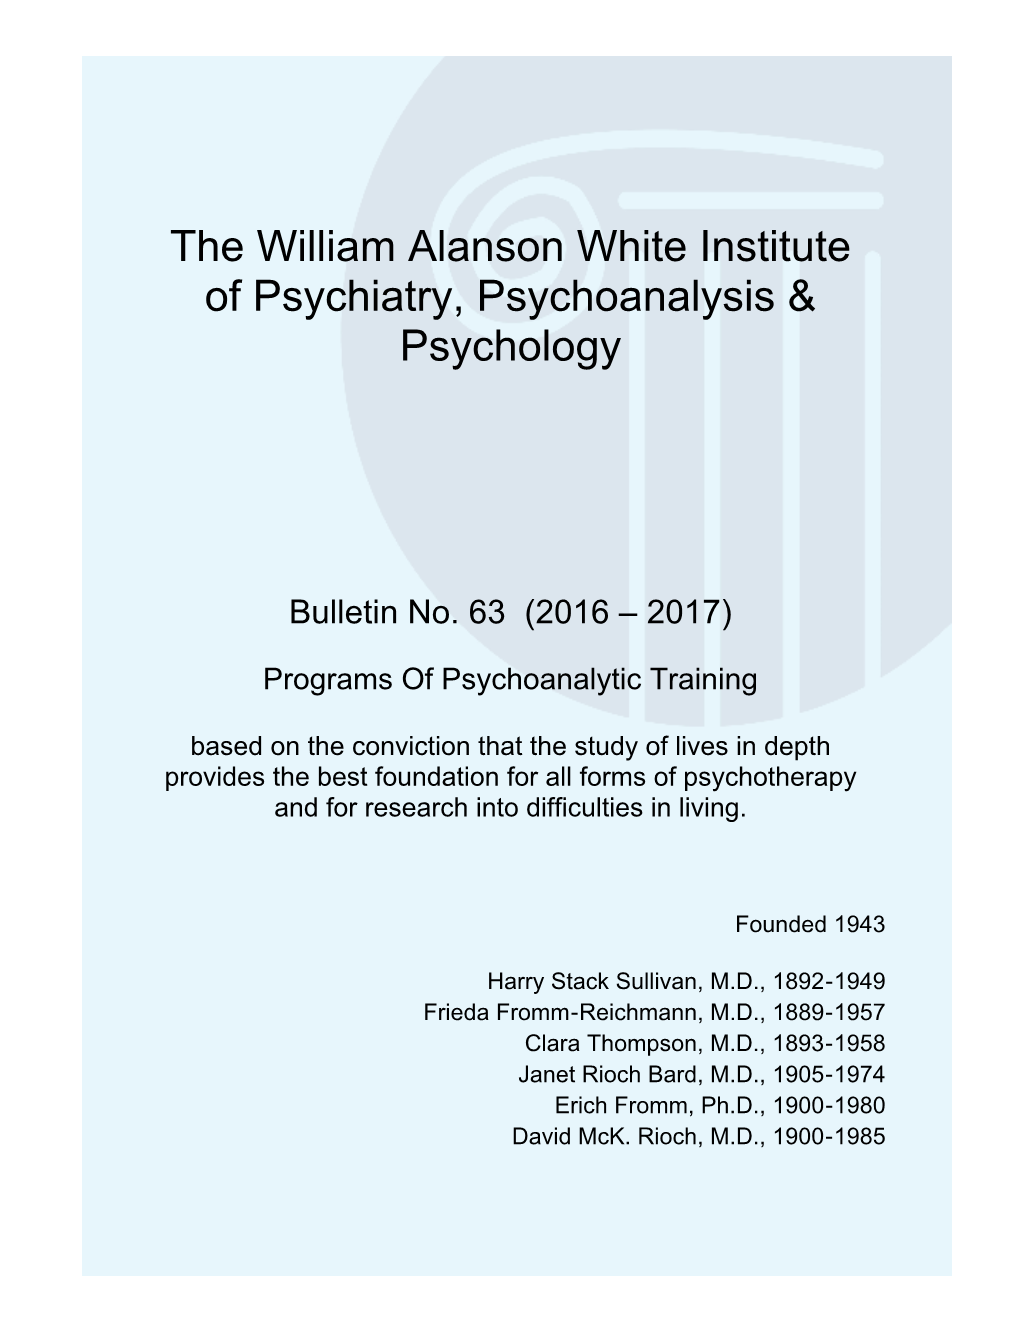 The William Alanson White Institute of Psychiatry, Psychoanalysis & Psychology